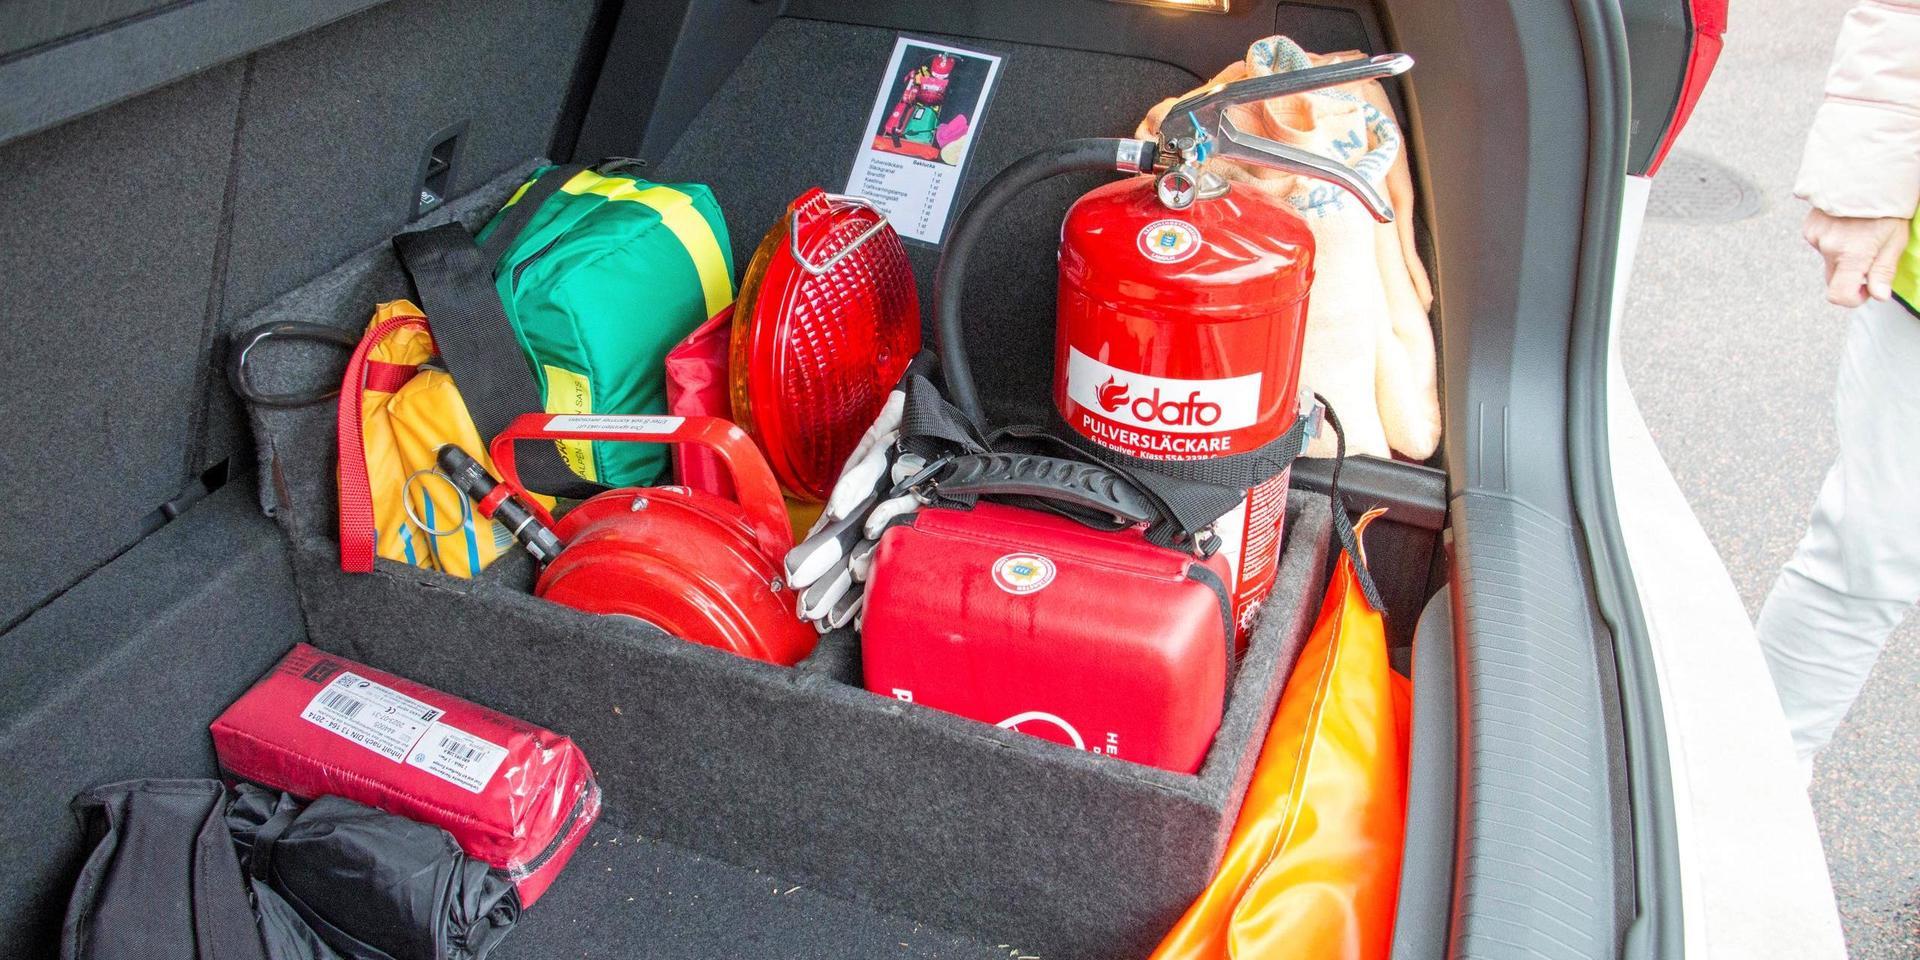  Förutom vanliga hemtjänstprylar packas numera också räddningsutrustning i bakluckan på nattpatrullens bilar.